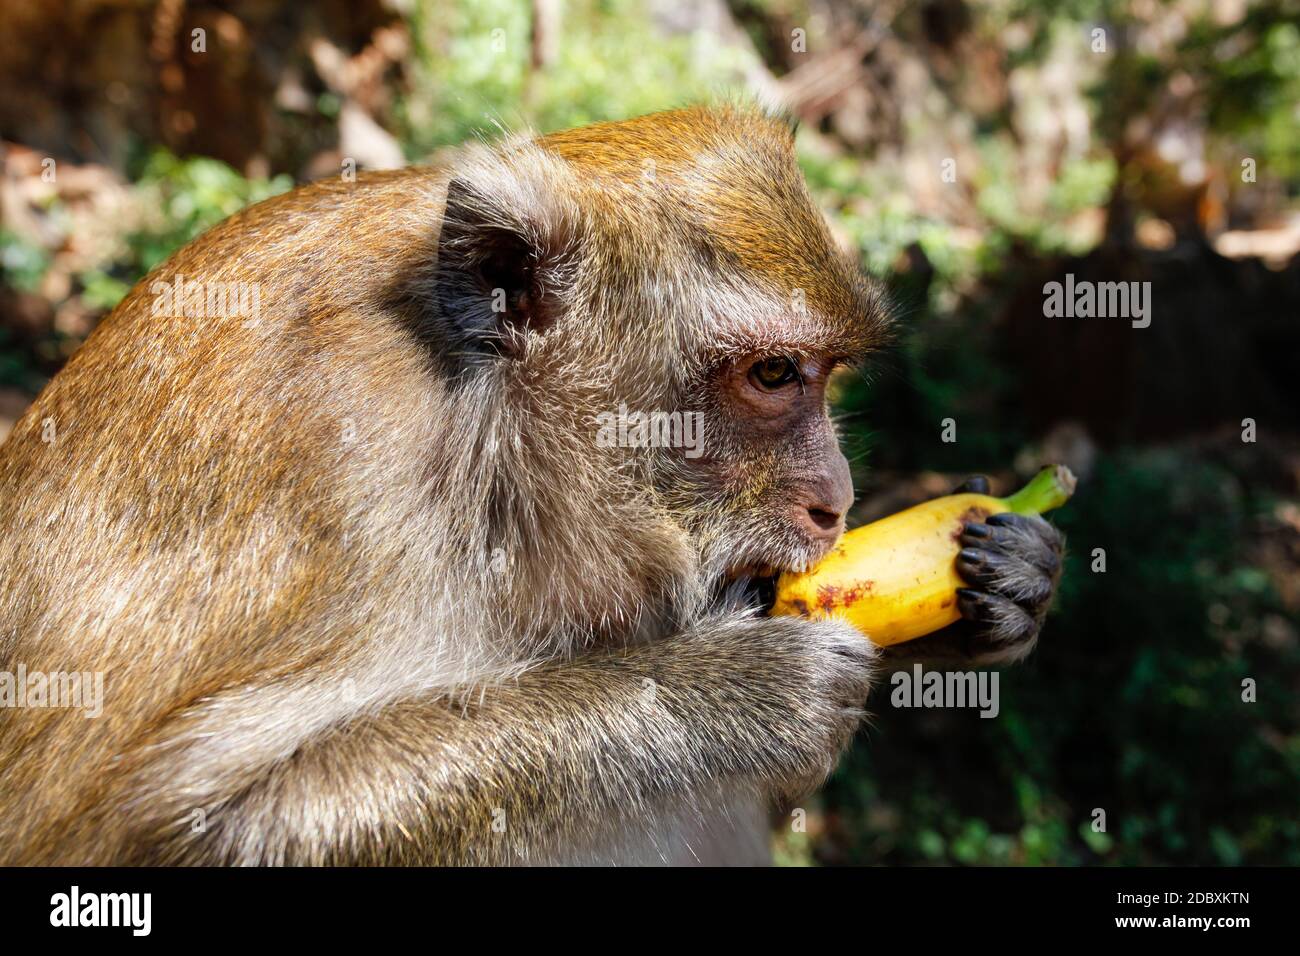 Dettagli sulla testa della lunga coda Macaque monkey (Macaca fascicularis) mangiando una banana da turista. Khao Sok, Thailandia Foto Stock